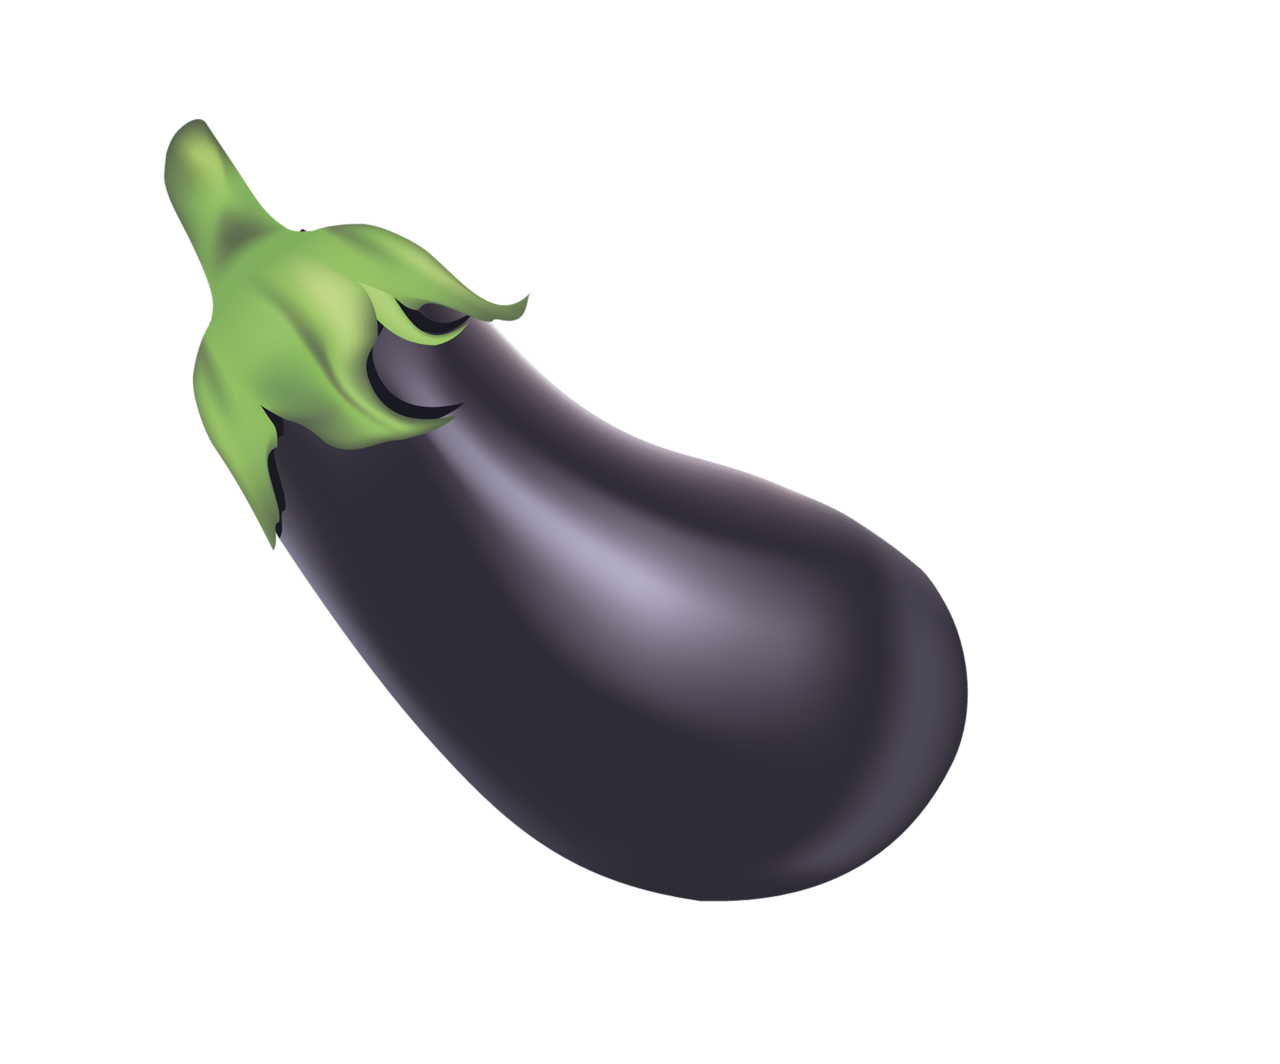 Download Single Brinjal Eggplant Free Download Image Hq Png Image